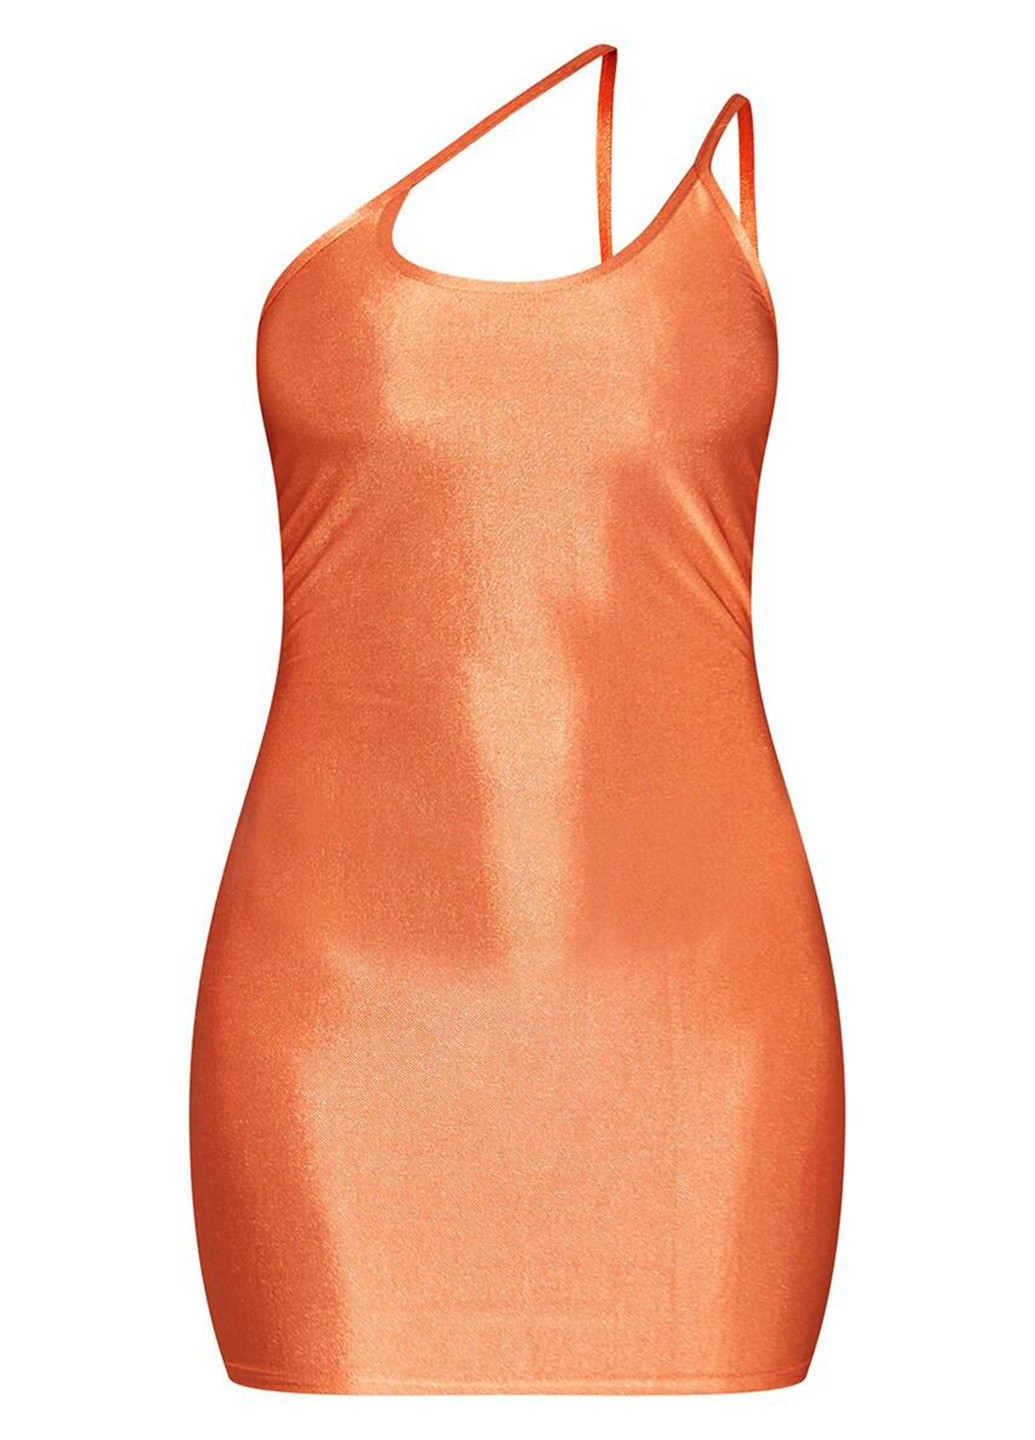 Оранжевое коктейльное платье платье-майка PrettyLittleThing однотонное